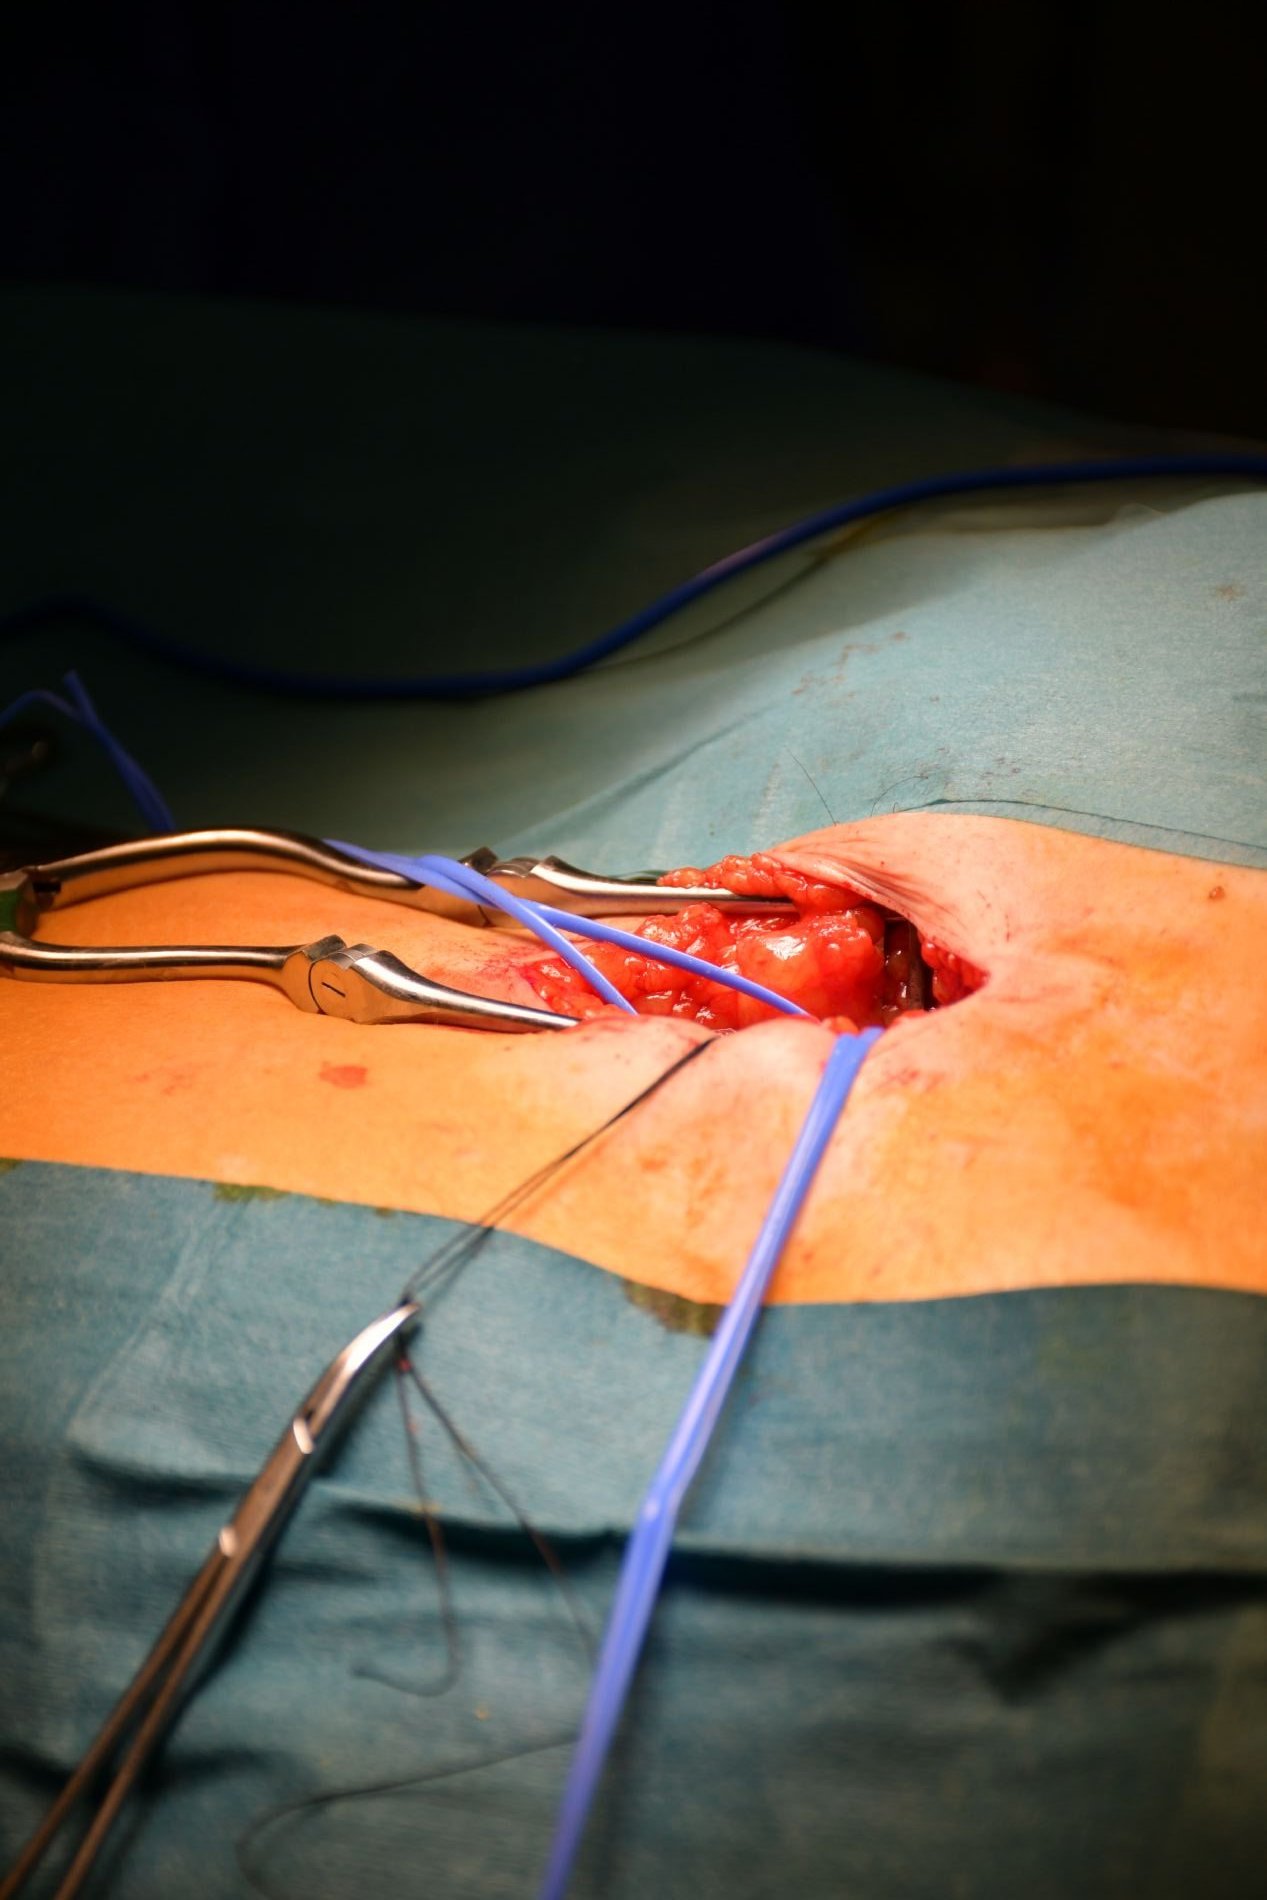 Cirugía endovascular navegada